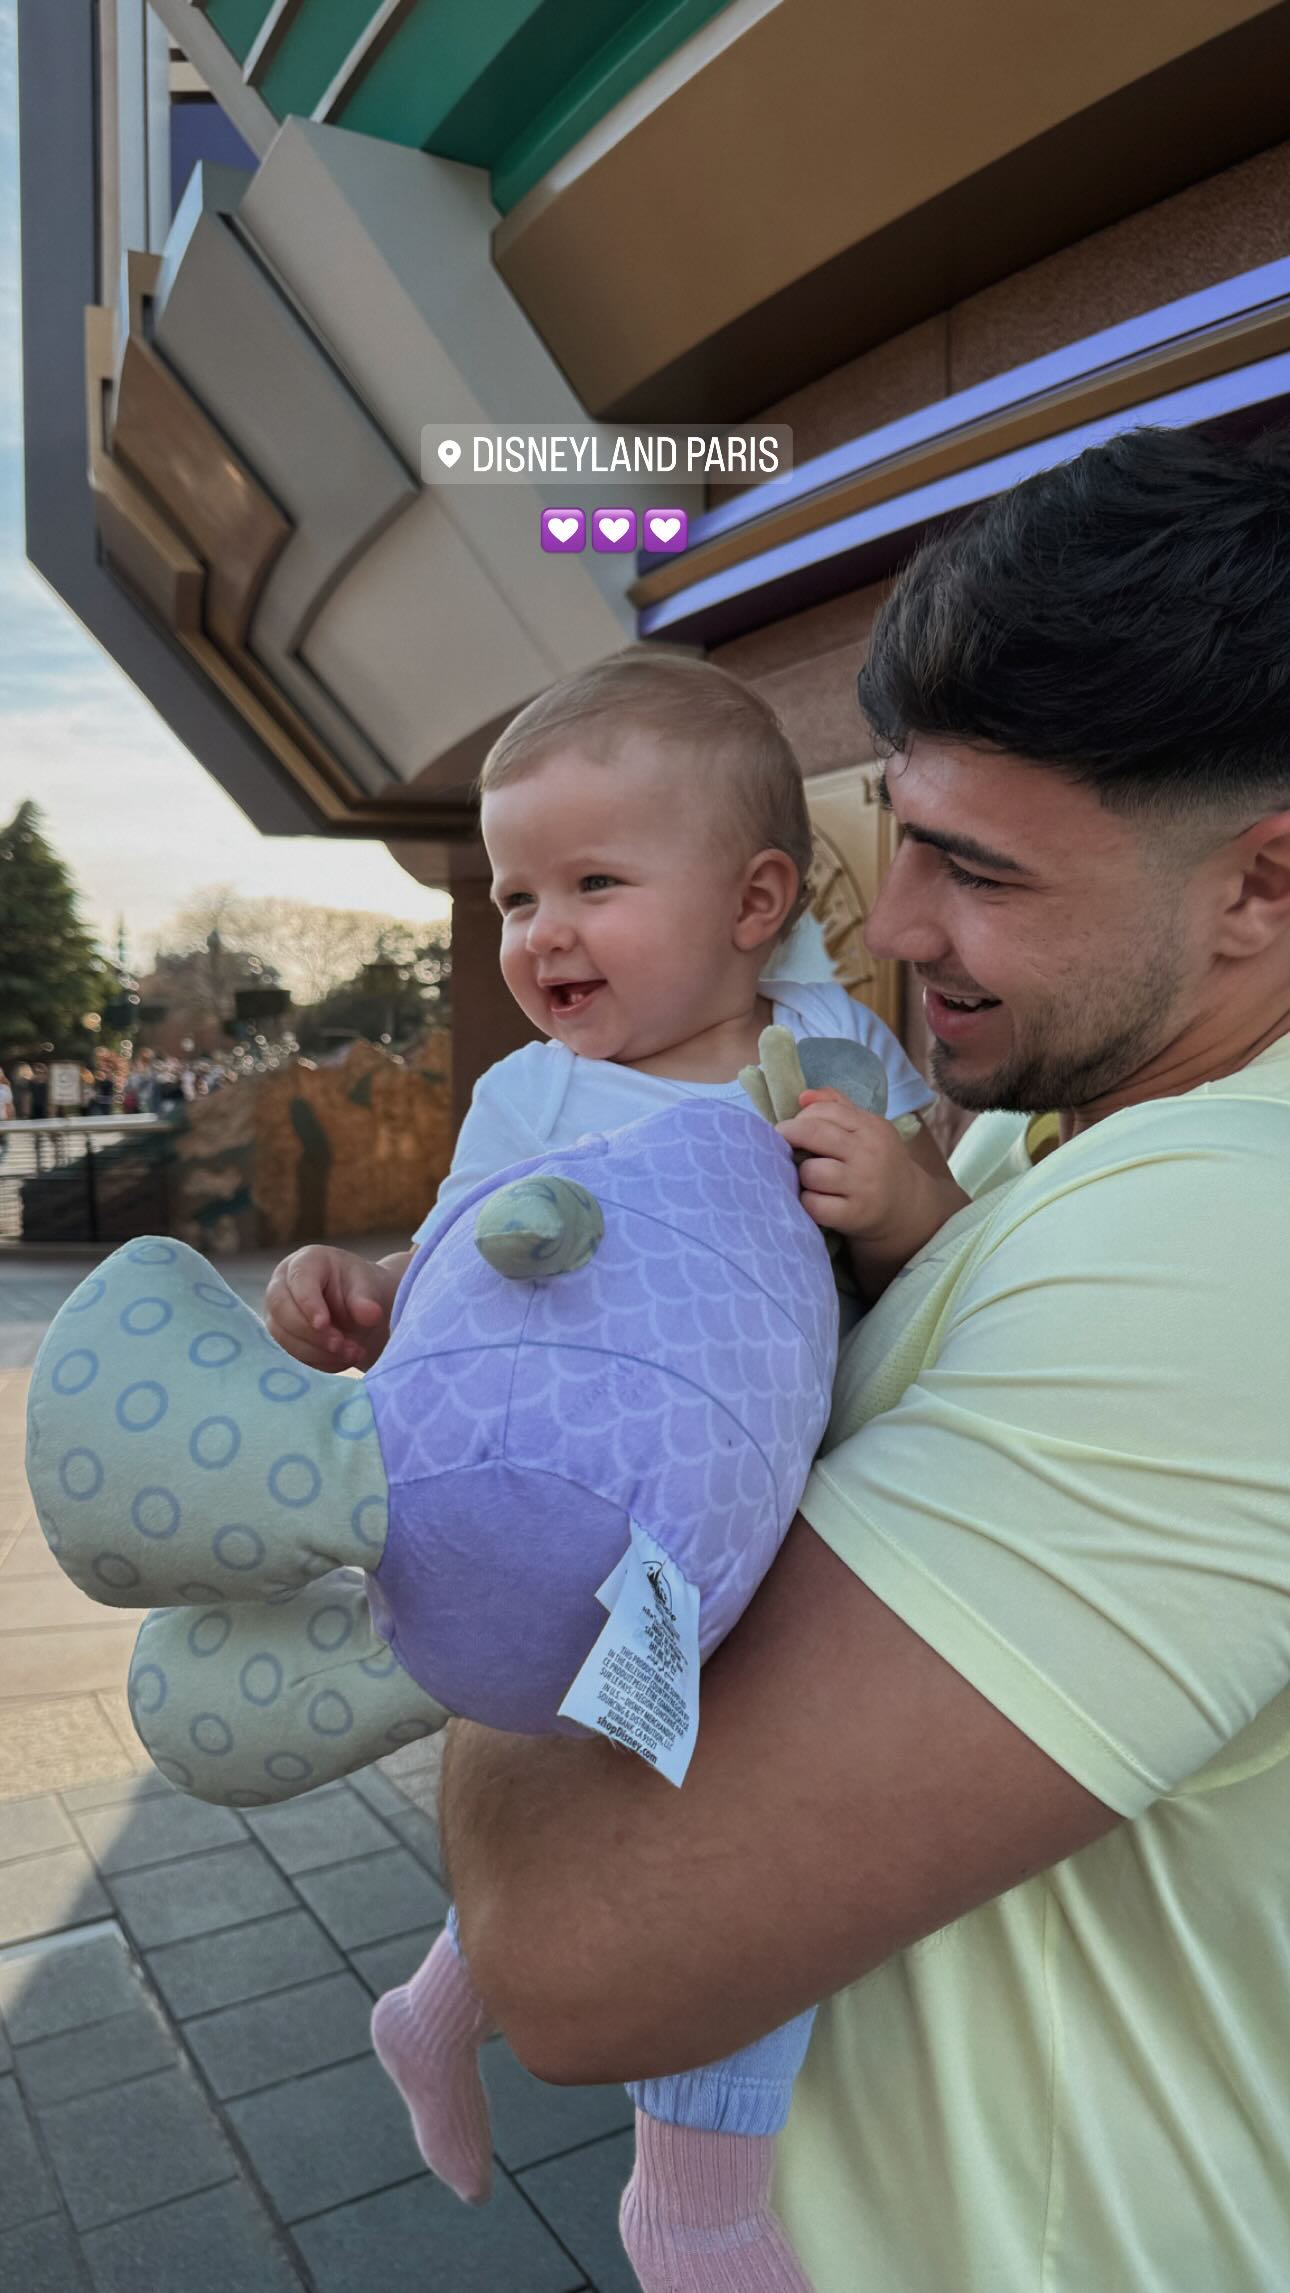 Die Familie genießt eine erholsame Zeit im Disneyland Paris